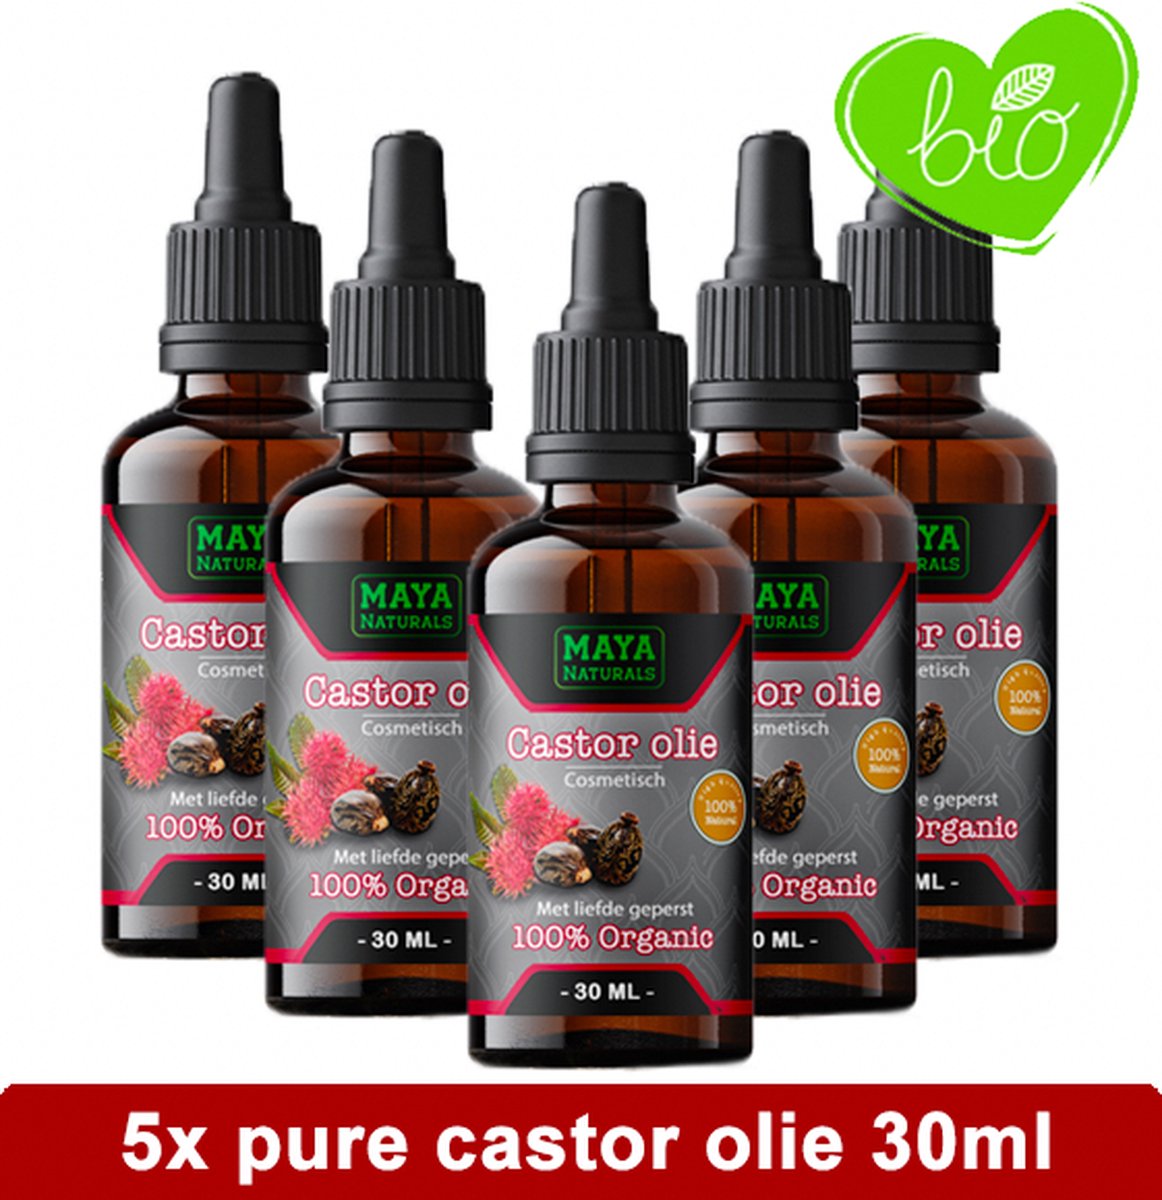 Natuurlijke Castor olie 5x 30ml | 100% Puur & Onbewerkt EU Bio keurmerk | Castor oil | castor olie wimpers & haar